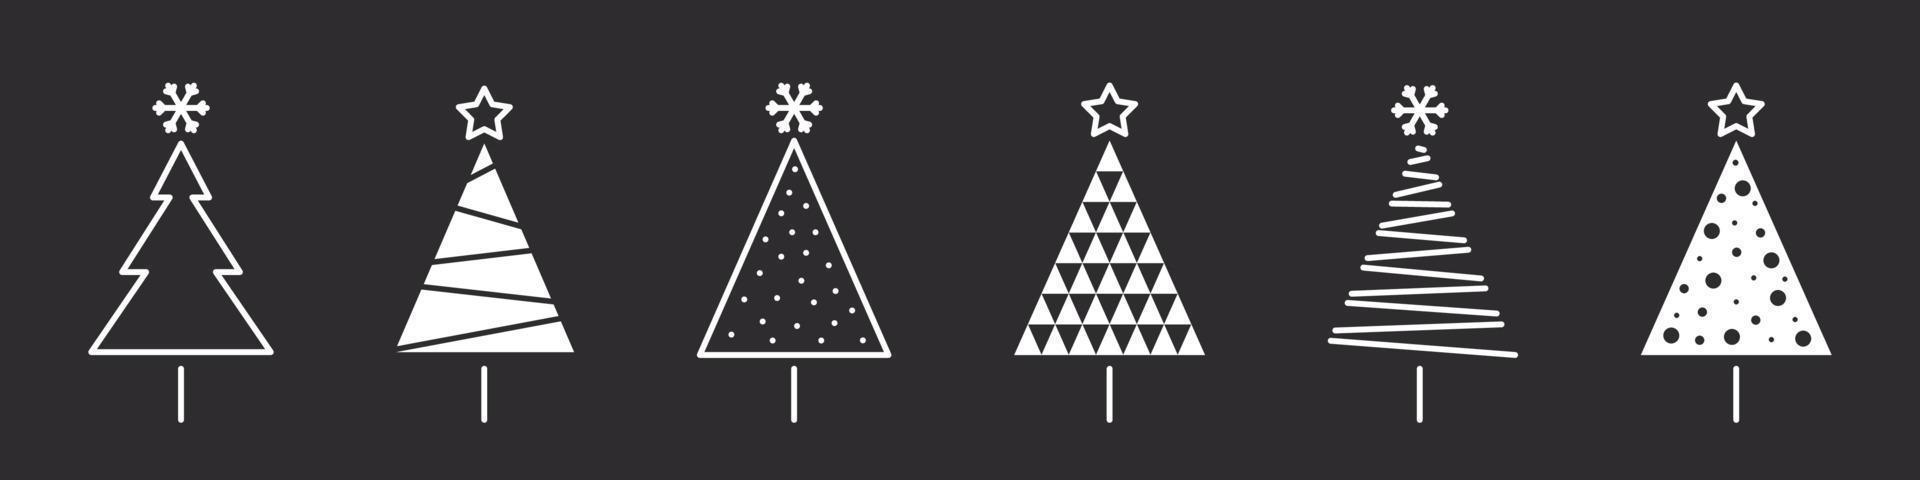 Arboles de navidad. iconos navideños modernos. signos de navidad. colección de árbol de navidad conceptual. ilustración vectorial vector